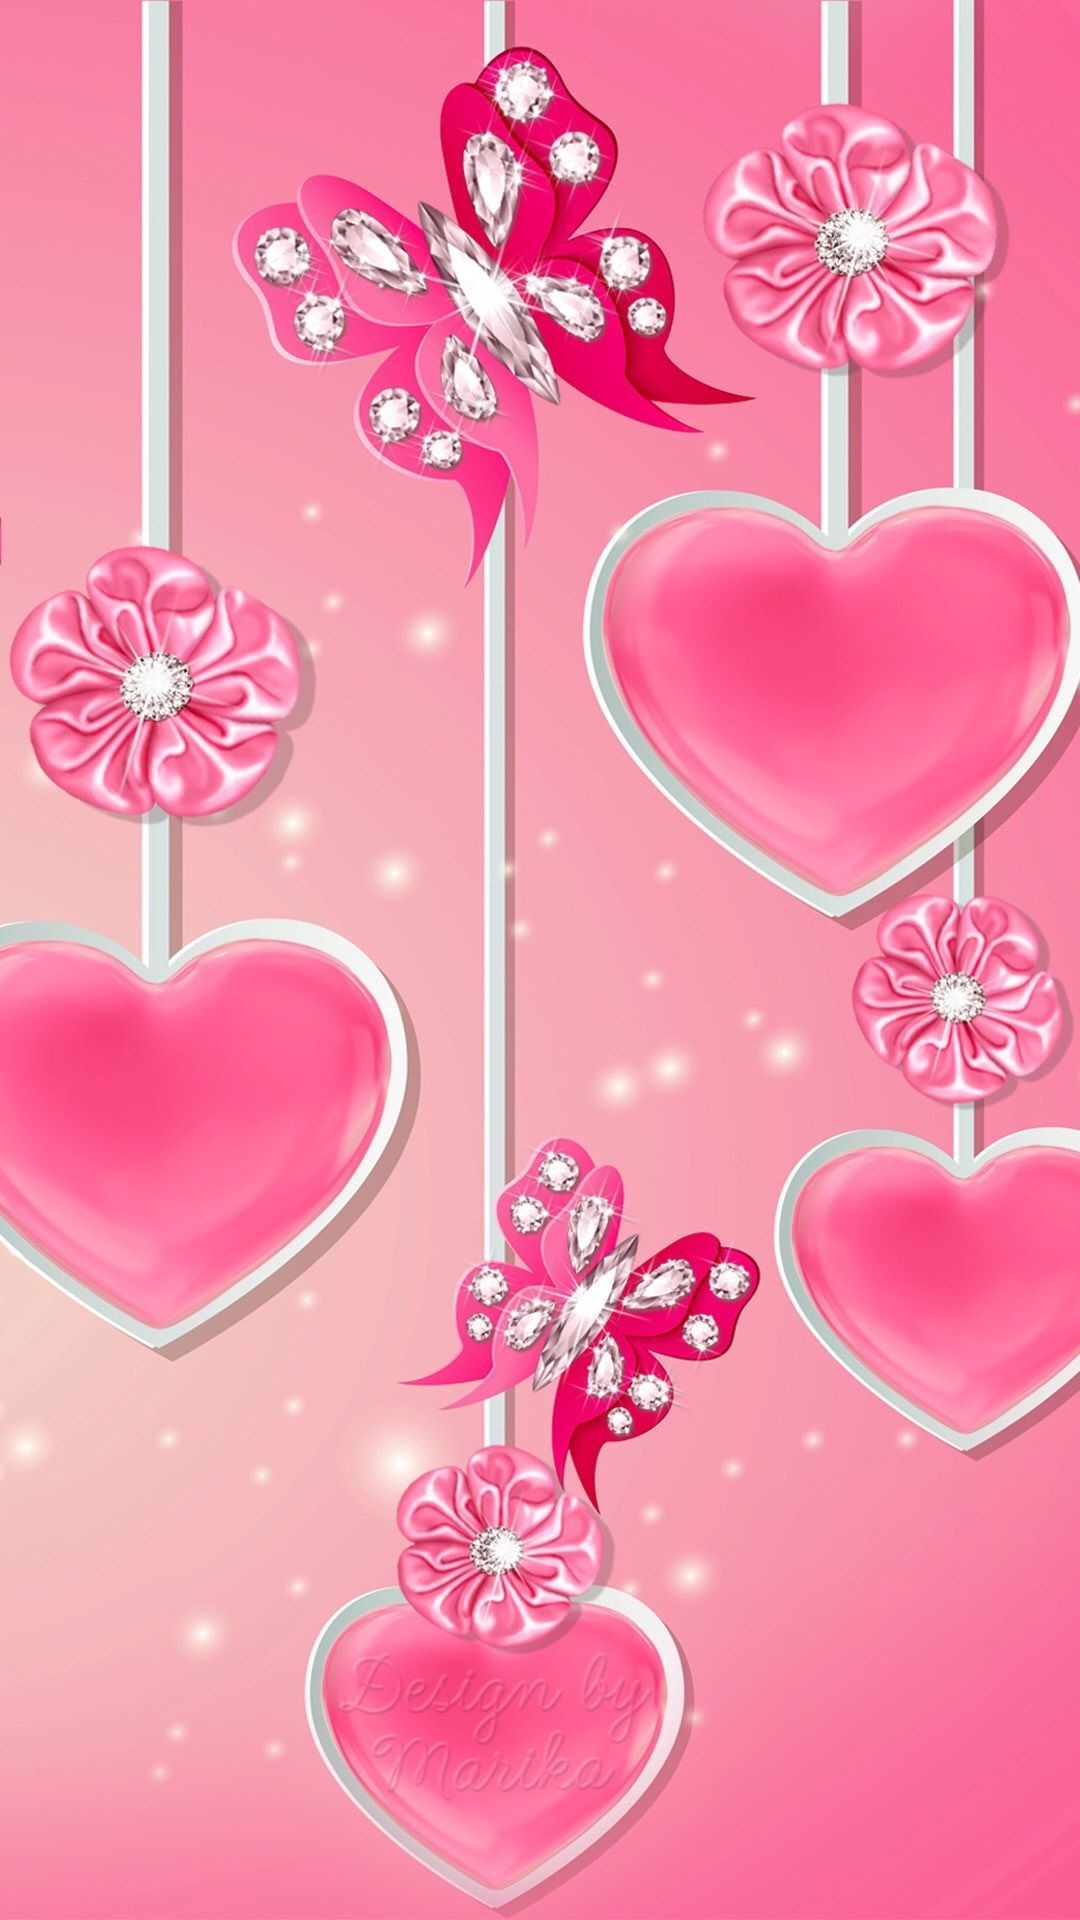 1080x1920 Pink Heart Wallpaper